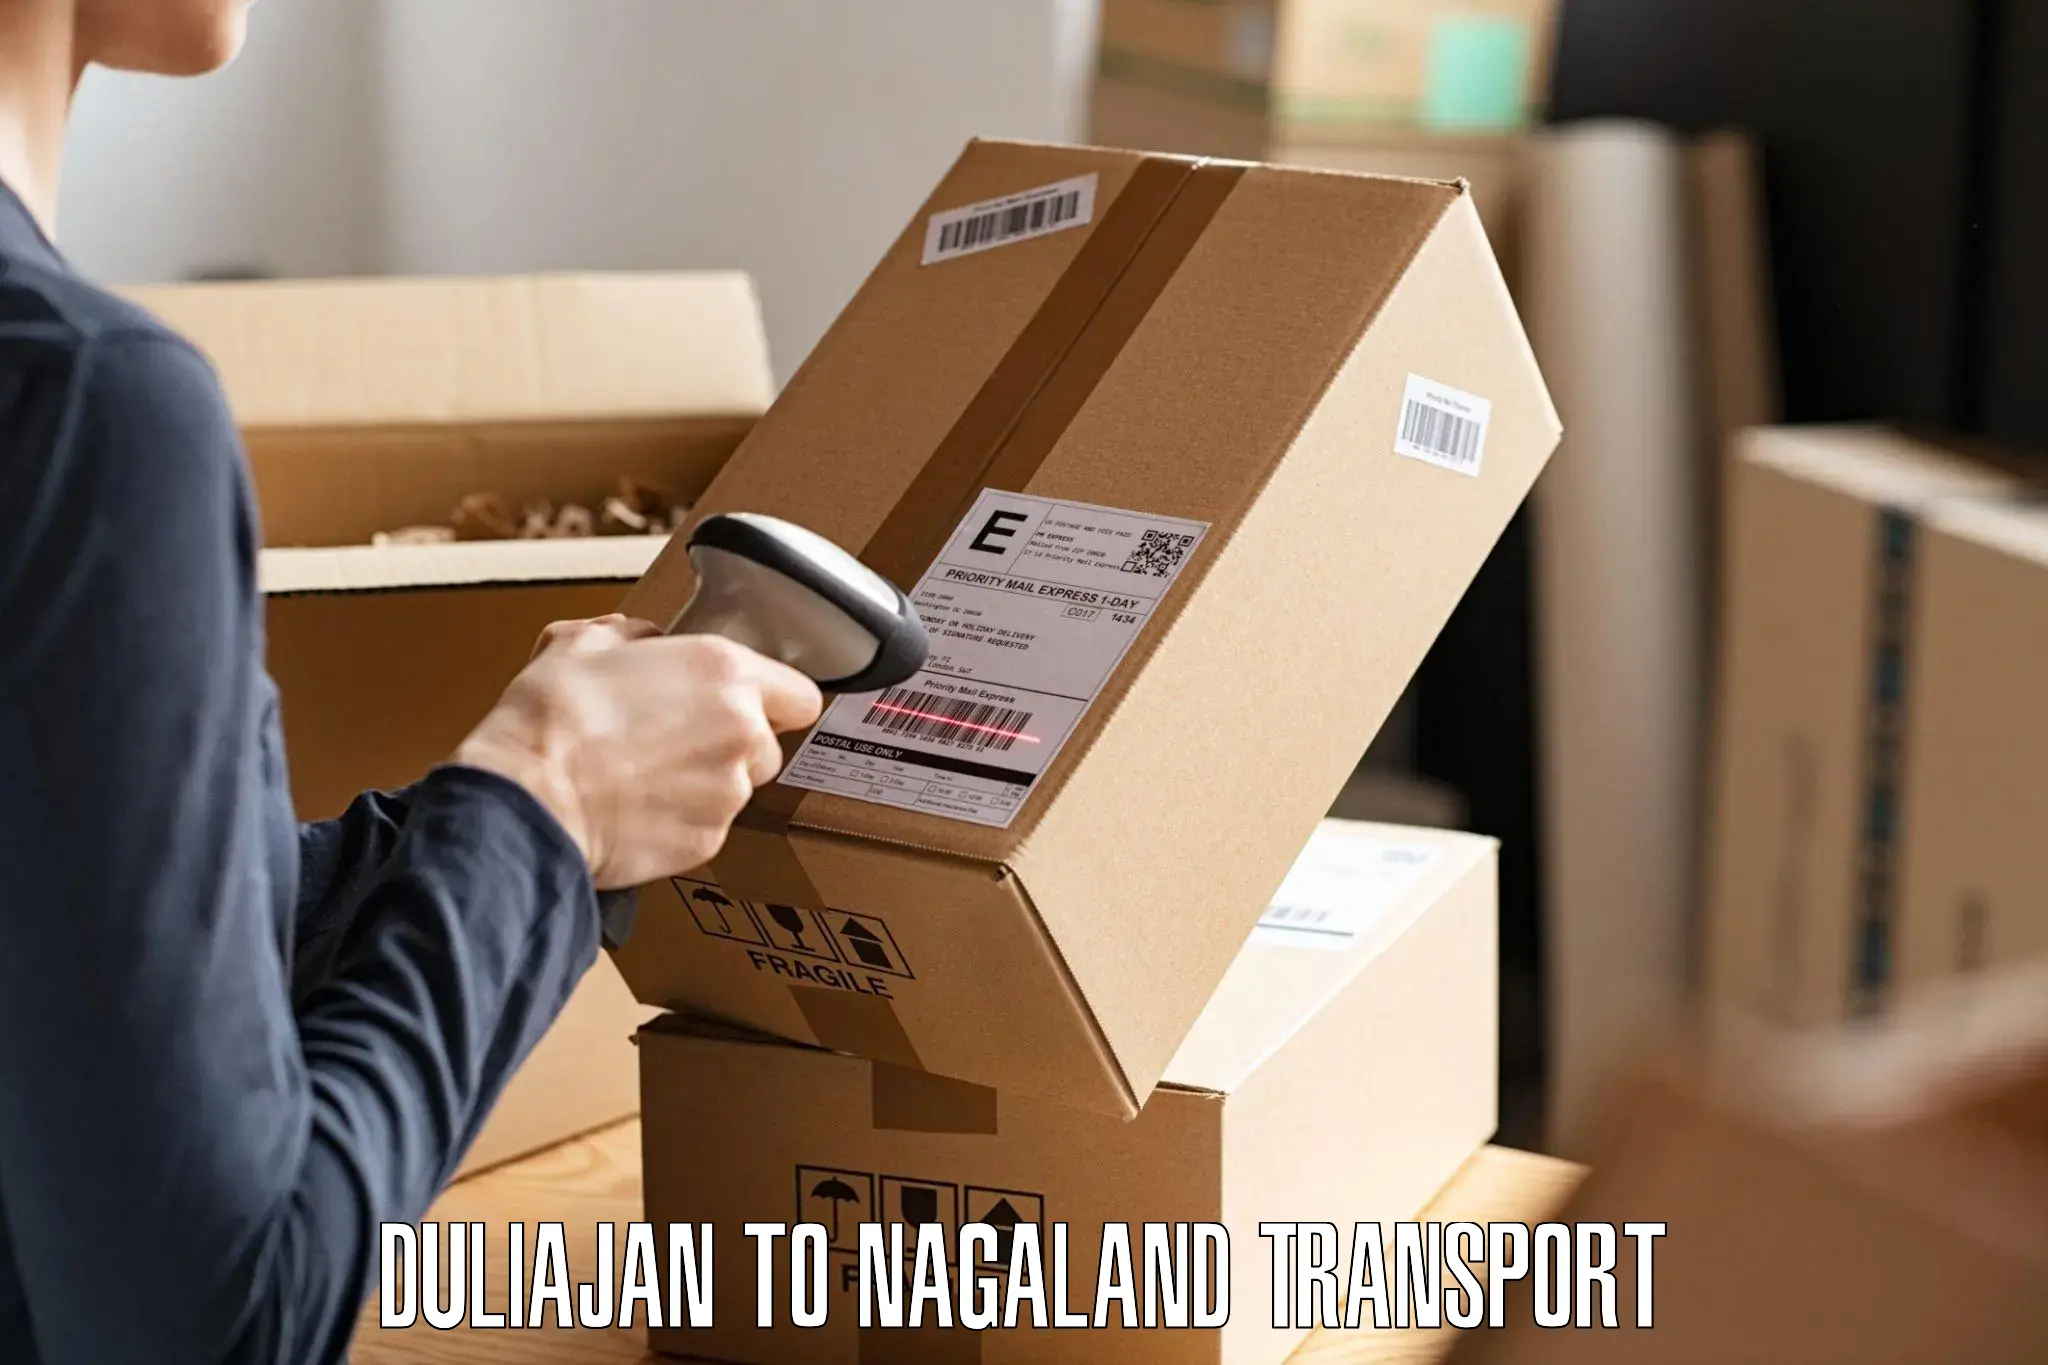 Parcel transport services Duliajan to Longleng